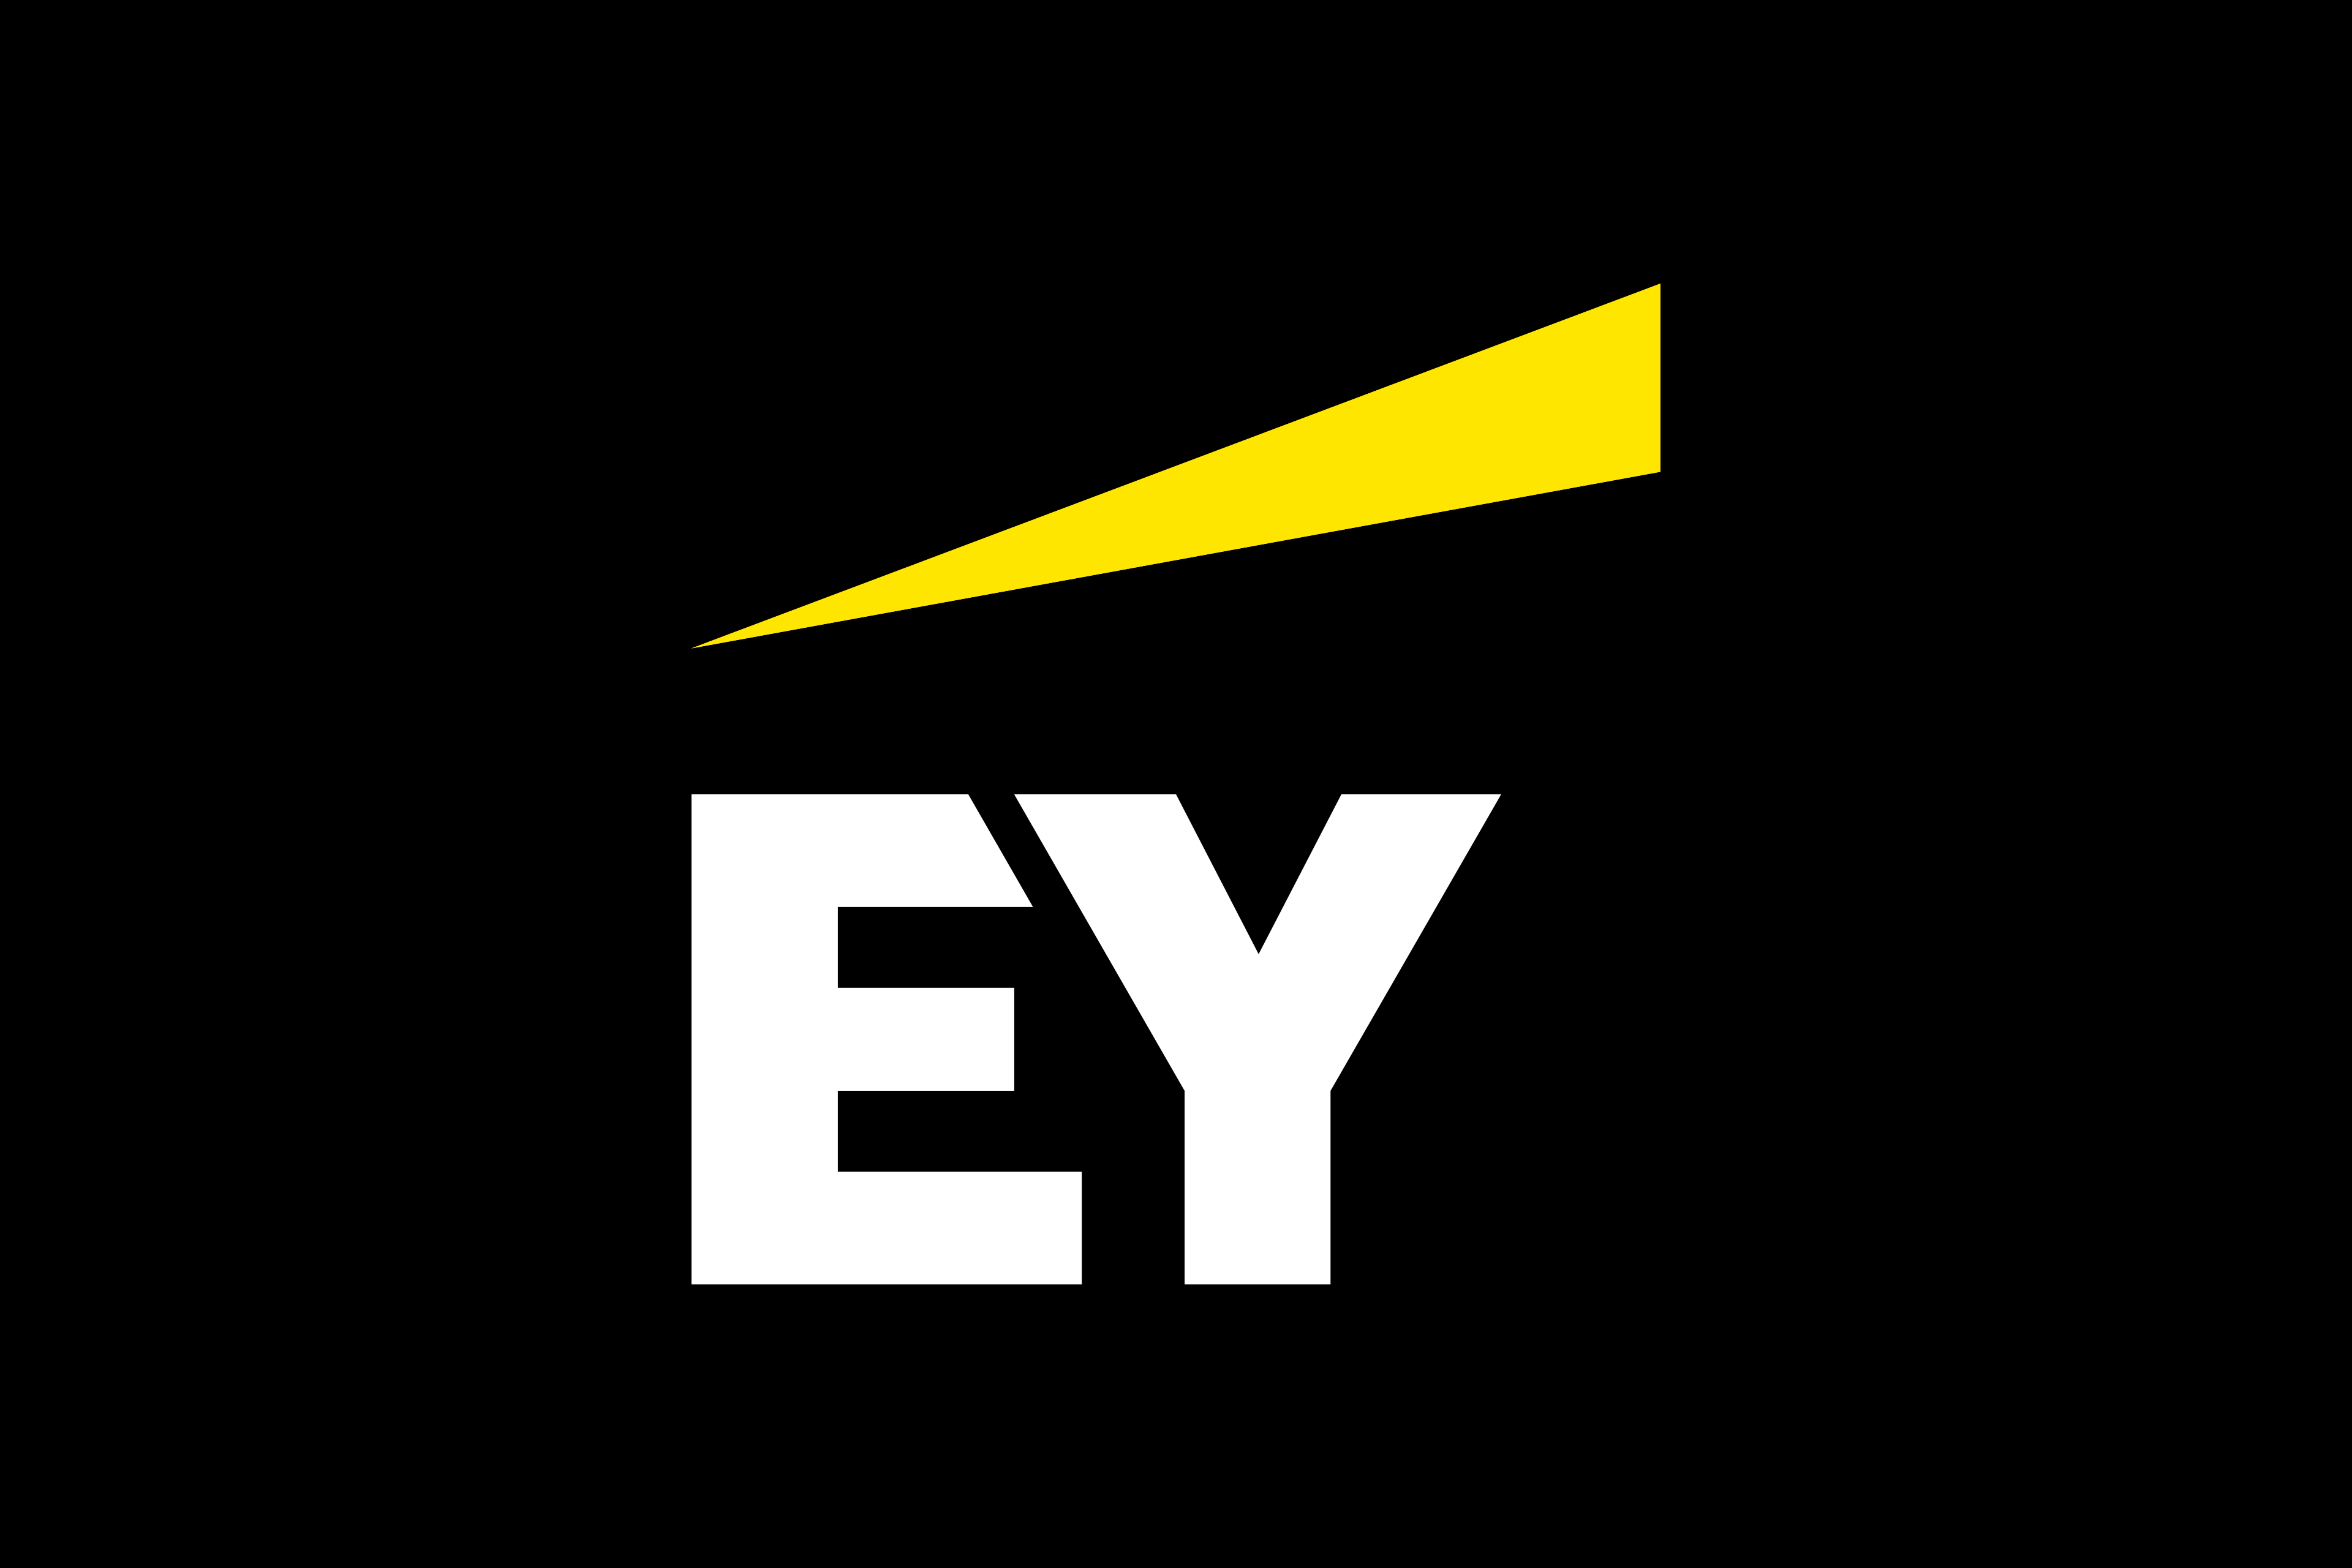 EY set to spin off audit division